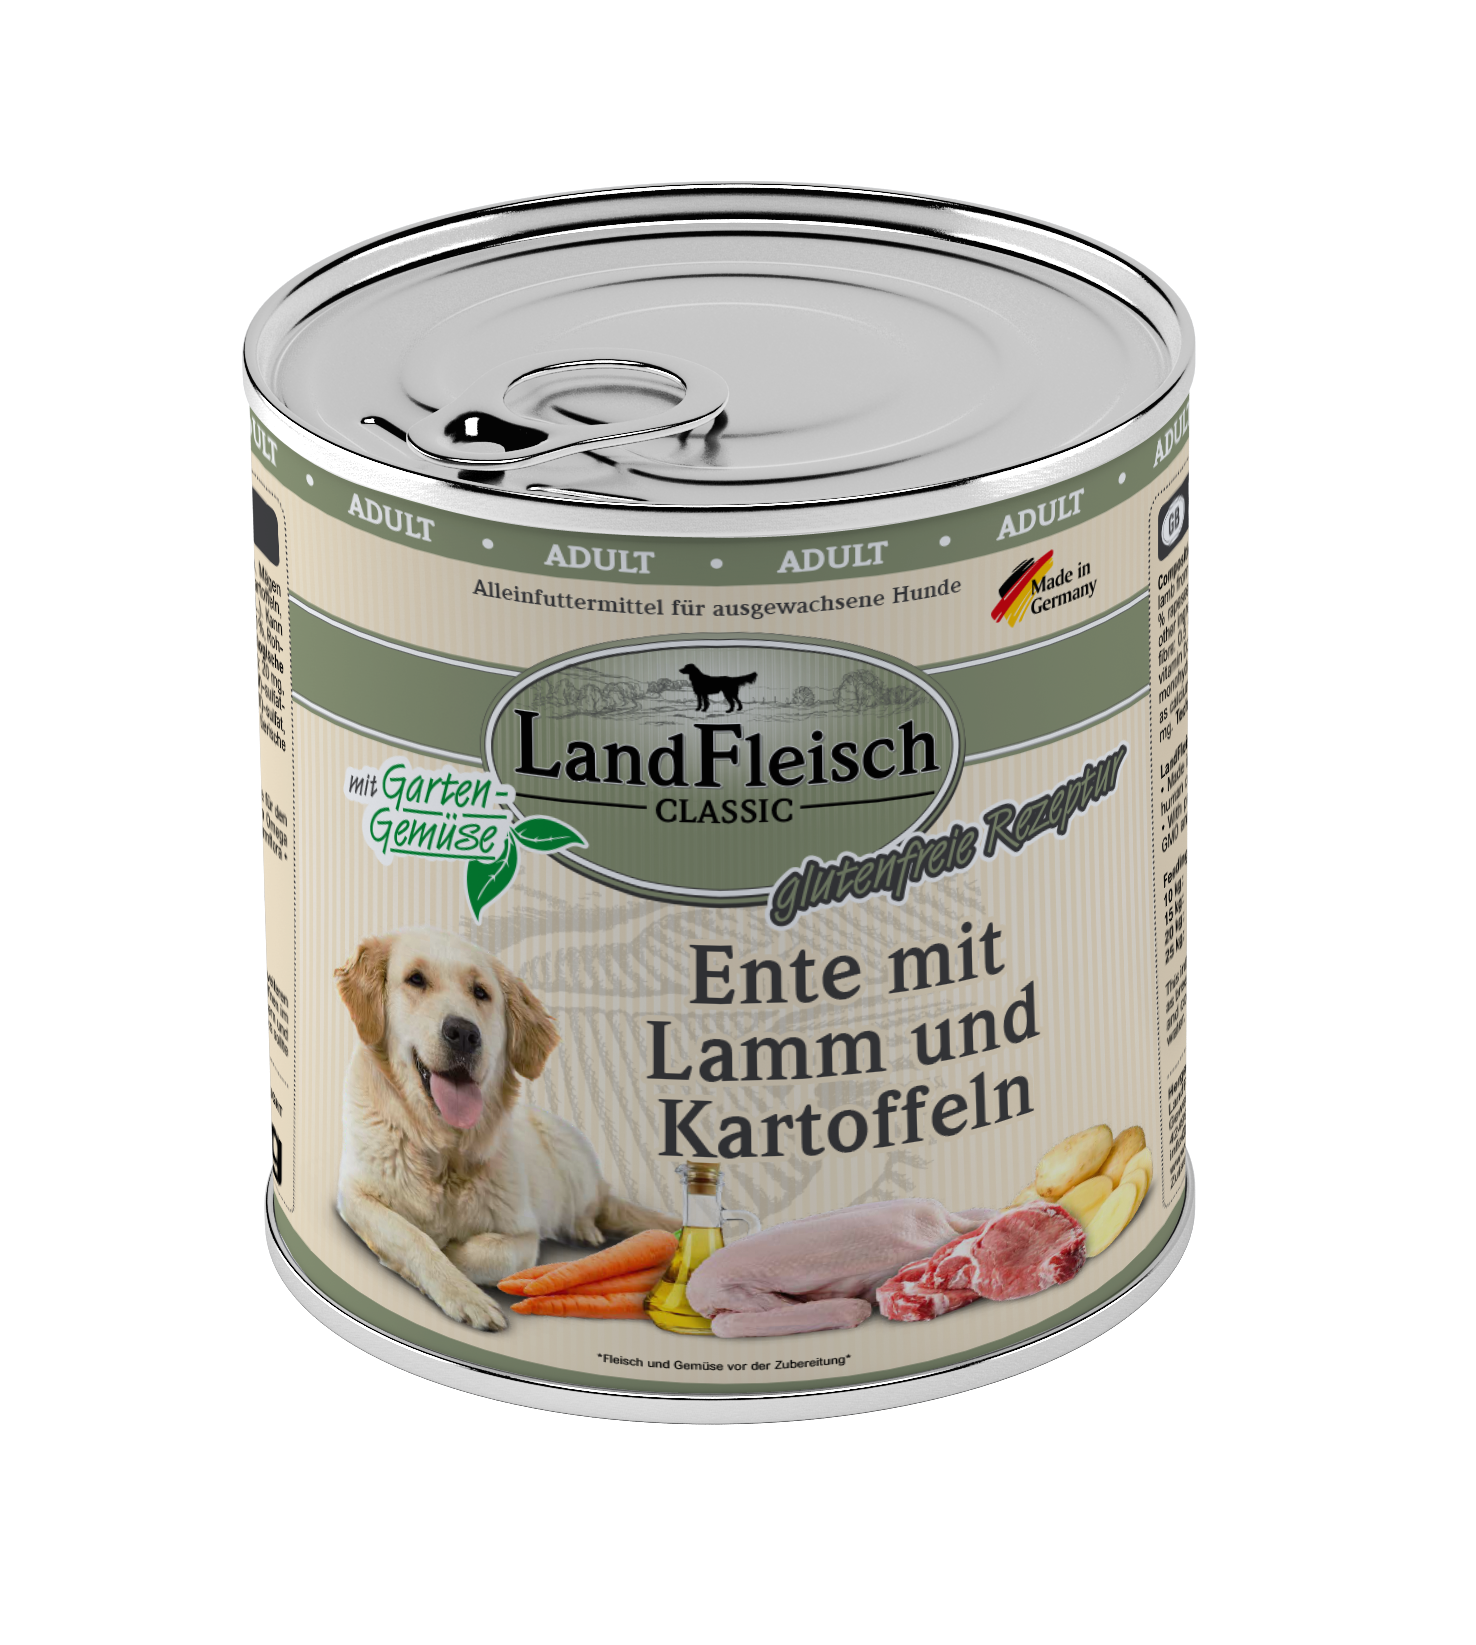 LandFleisch Dog Classic Ente mit Lamm und Kartoffeln 800g